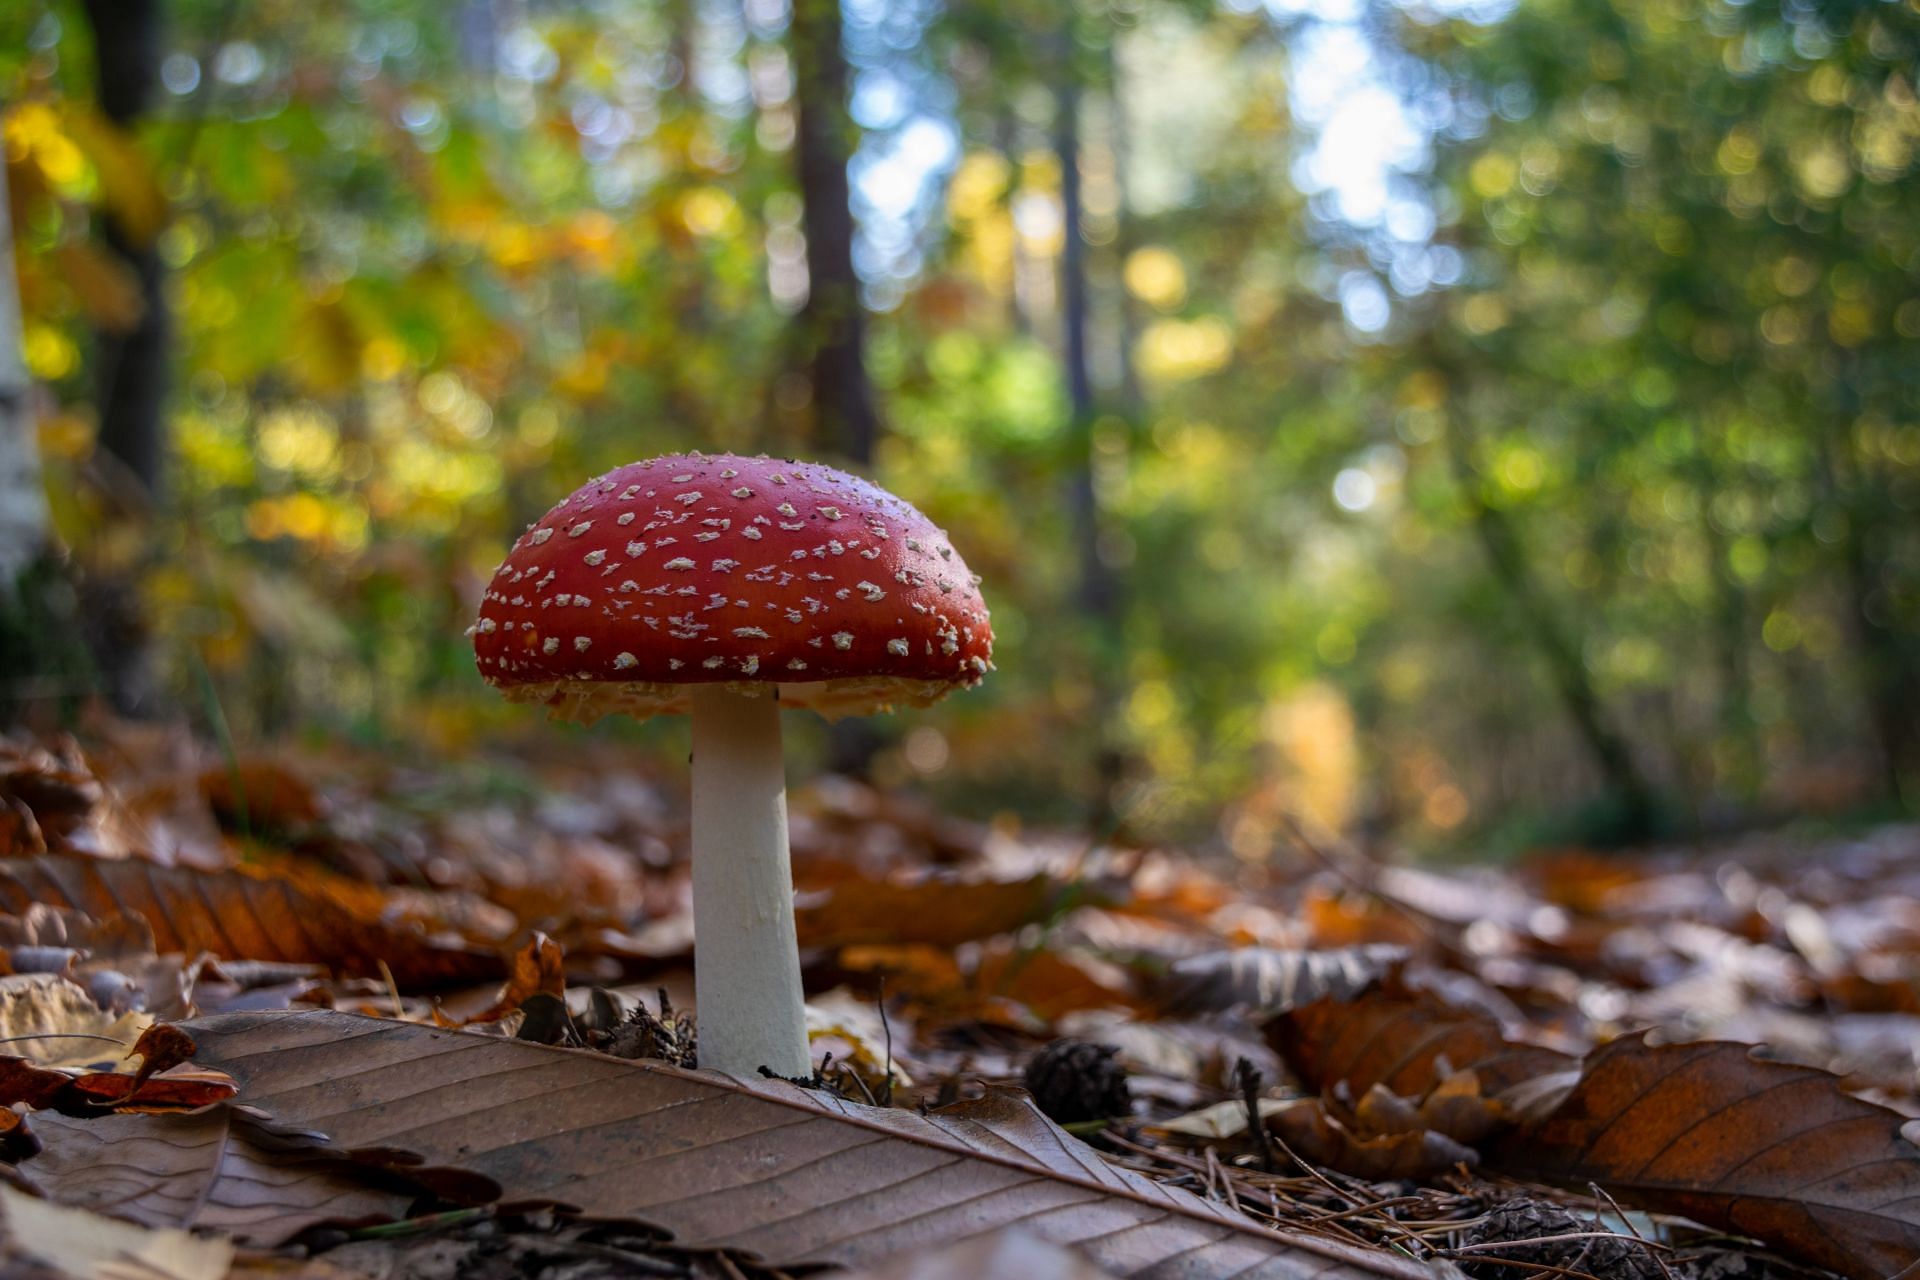 Types of mushrooms (Image via Unsplash/Thomas)